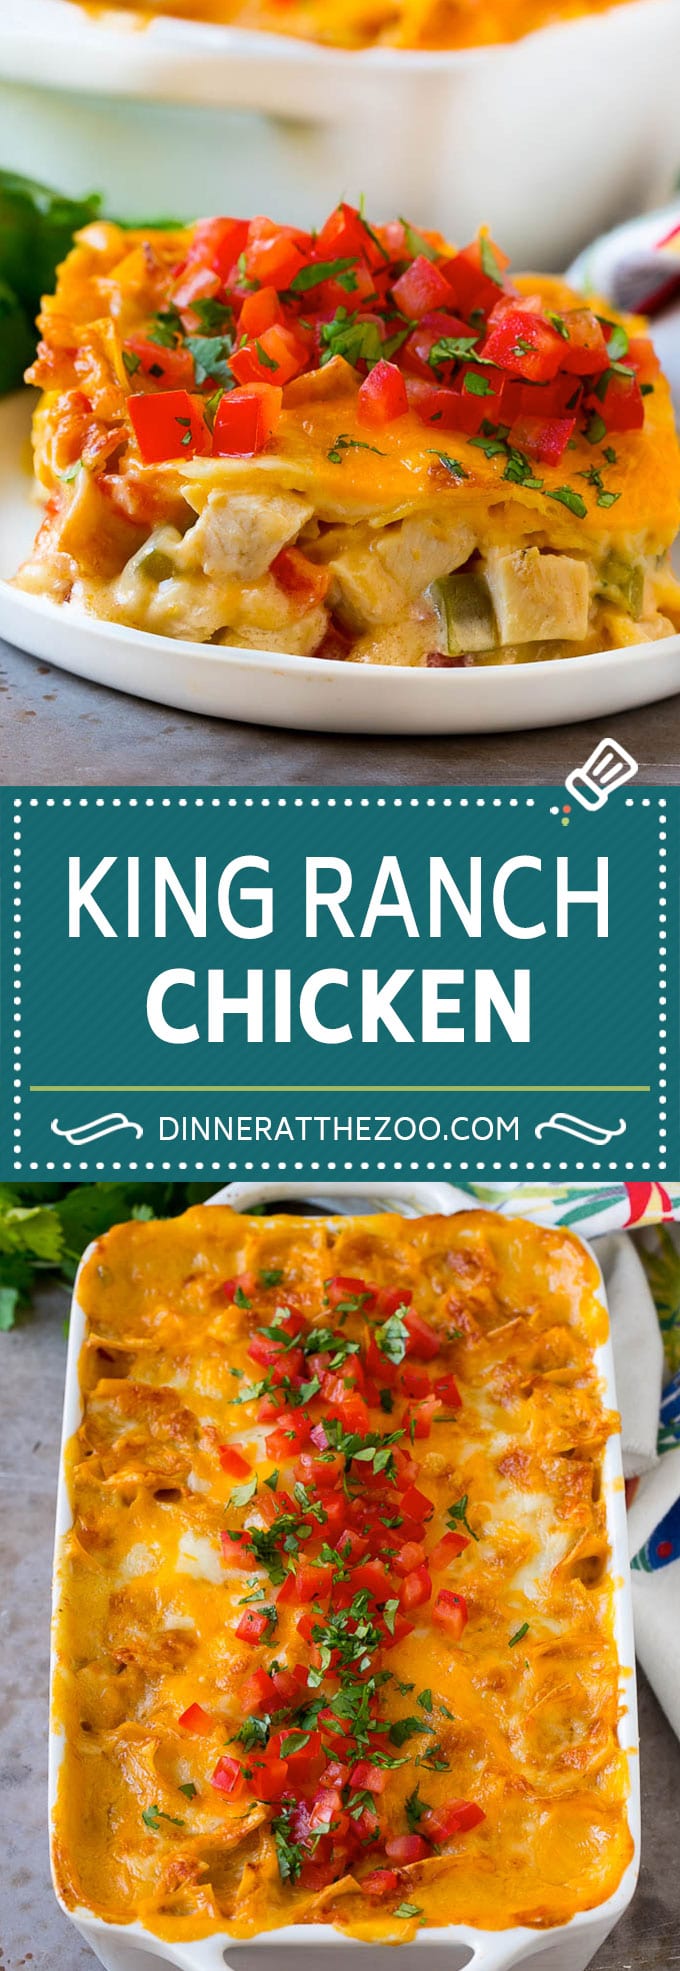 Receta de pollo King Ranch |  Cazuela De Pollo Mexicano |  Flan cremoso de pollo # cazuela #Pollo #quese #comfortfood # cena #dinneratthezoo